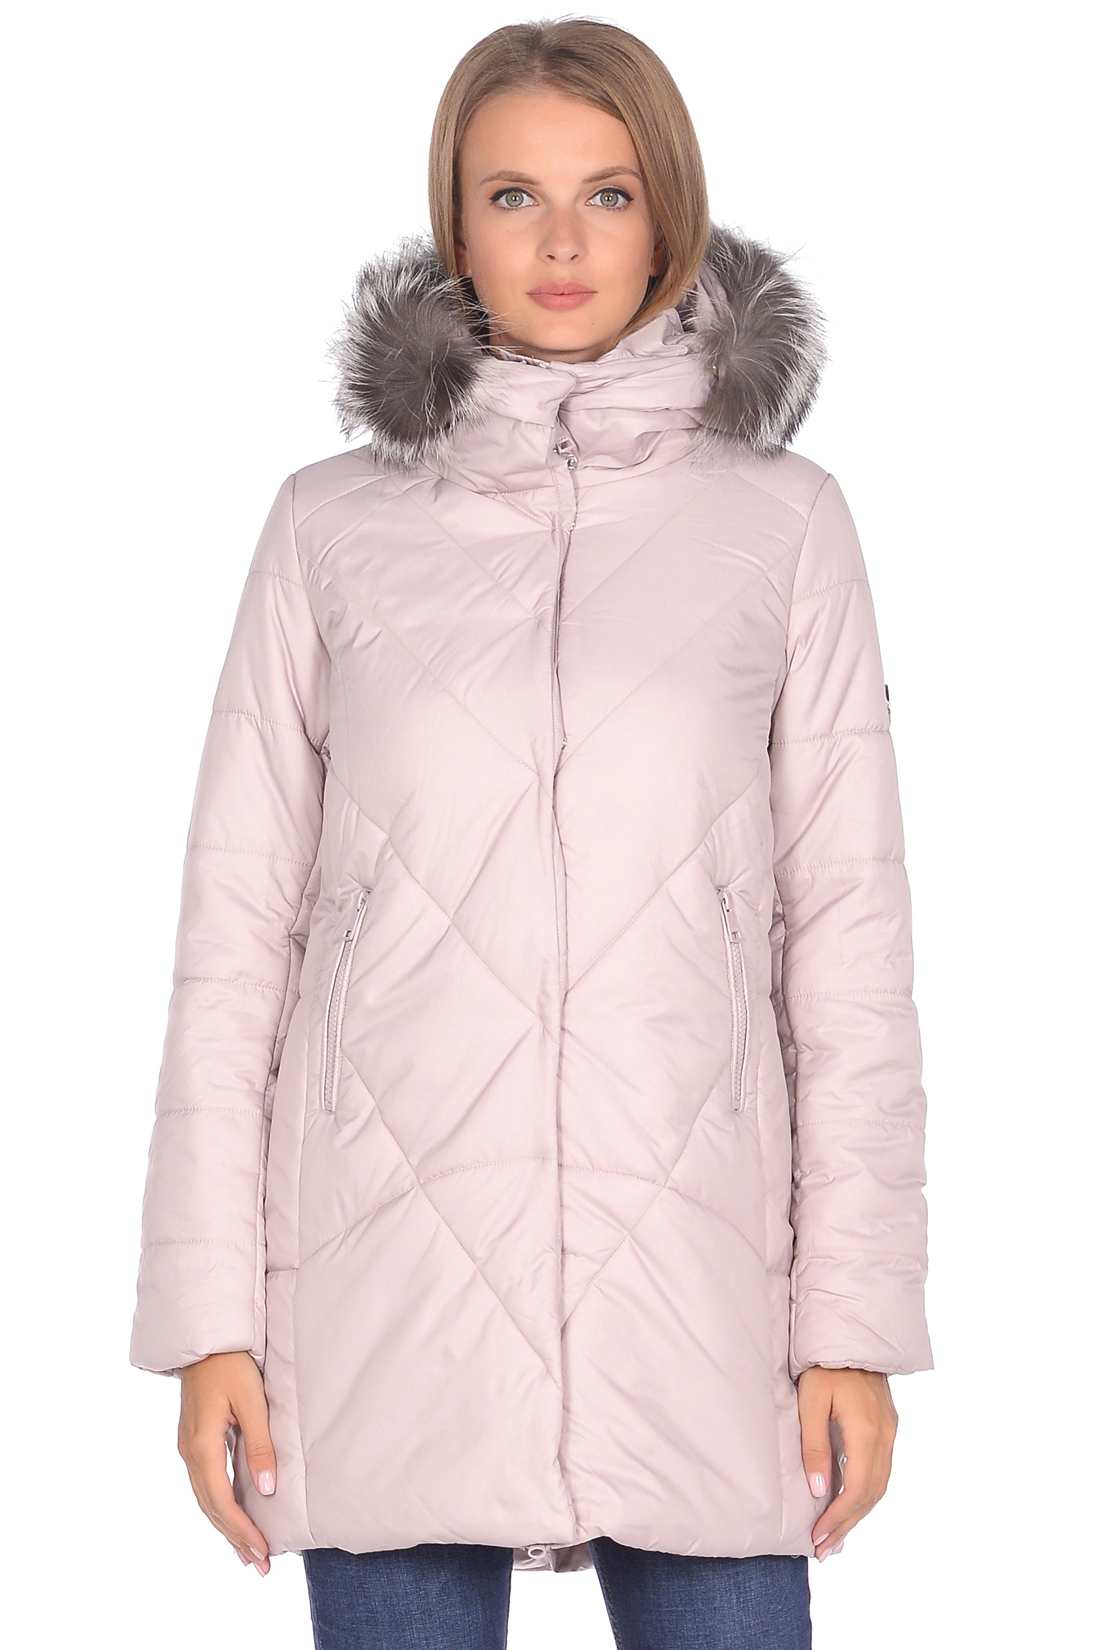 Куртка с мехом чернобурки (арт. baon B038562), размер XXL, цвет розовый Куртка с мехом чернобурки (арт. baon B038562) - фото 1